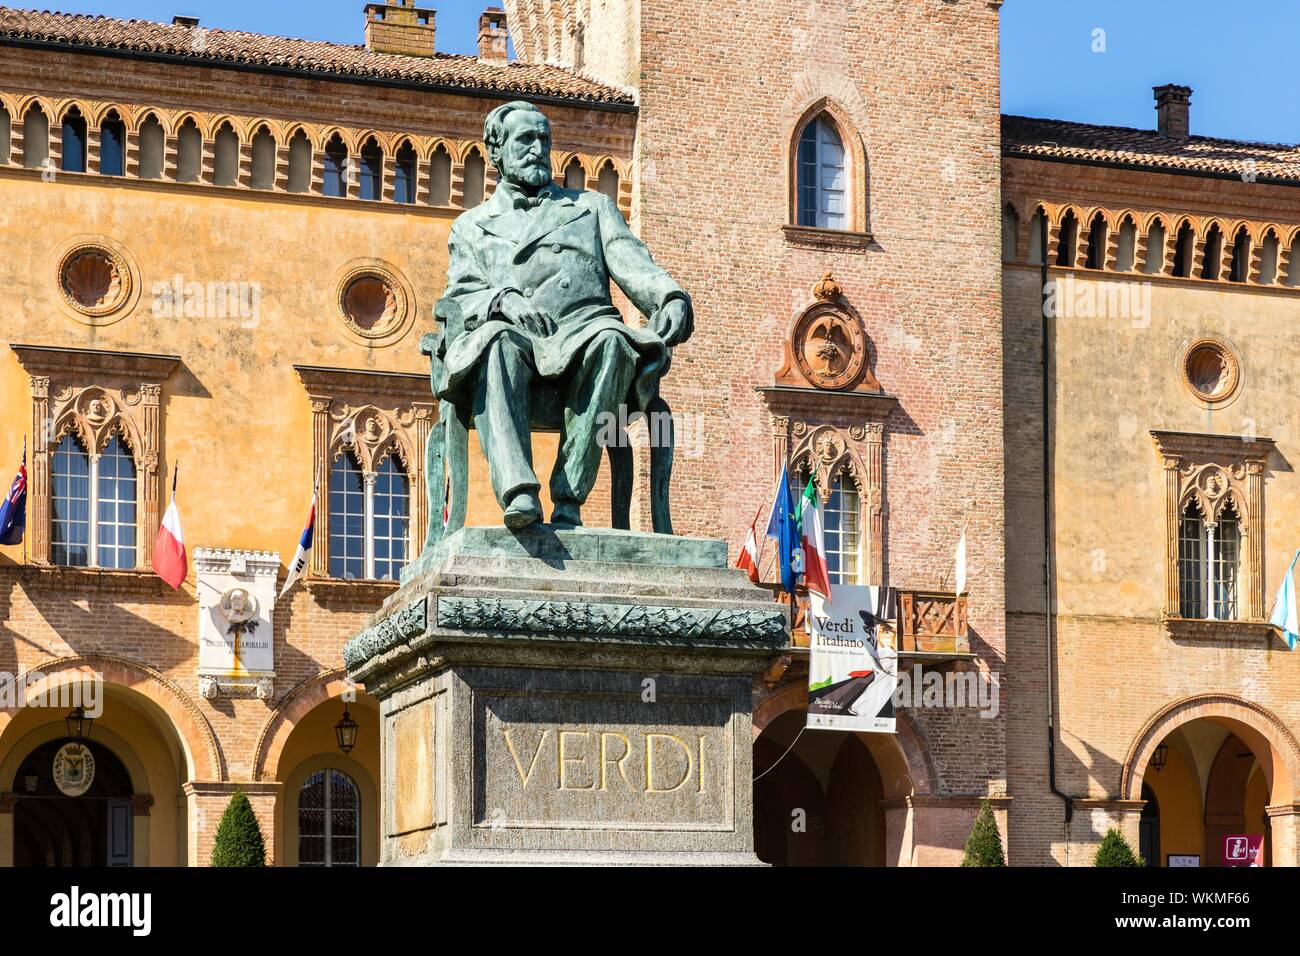 Verdi Monument situé en face de Rocca Pallavicino avec Opéra Teatro Giuseppe Verdi, Busseto, Province de Parme, Emilie-Romagne, Italie Banque D'Images